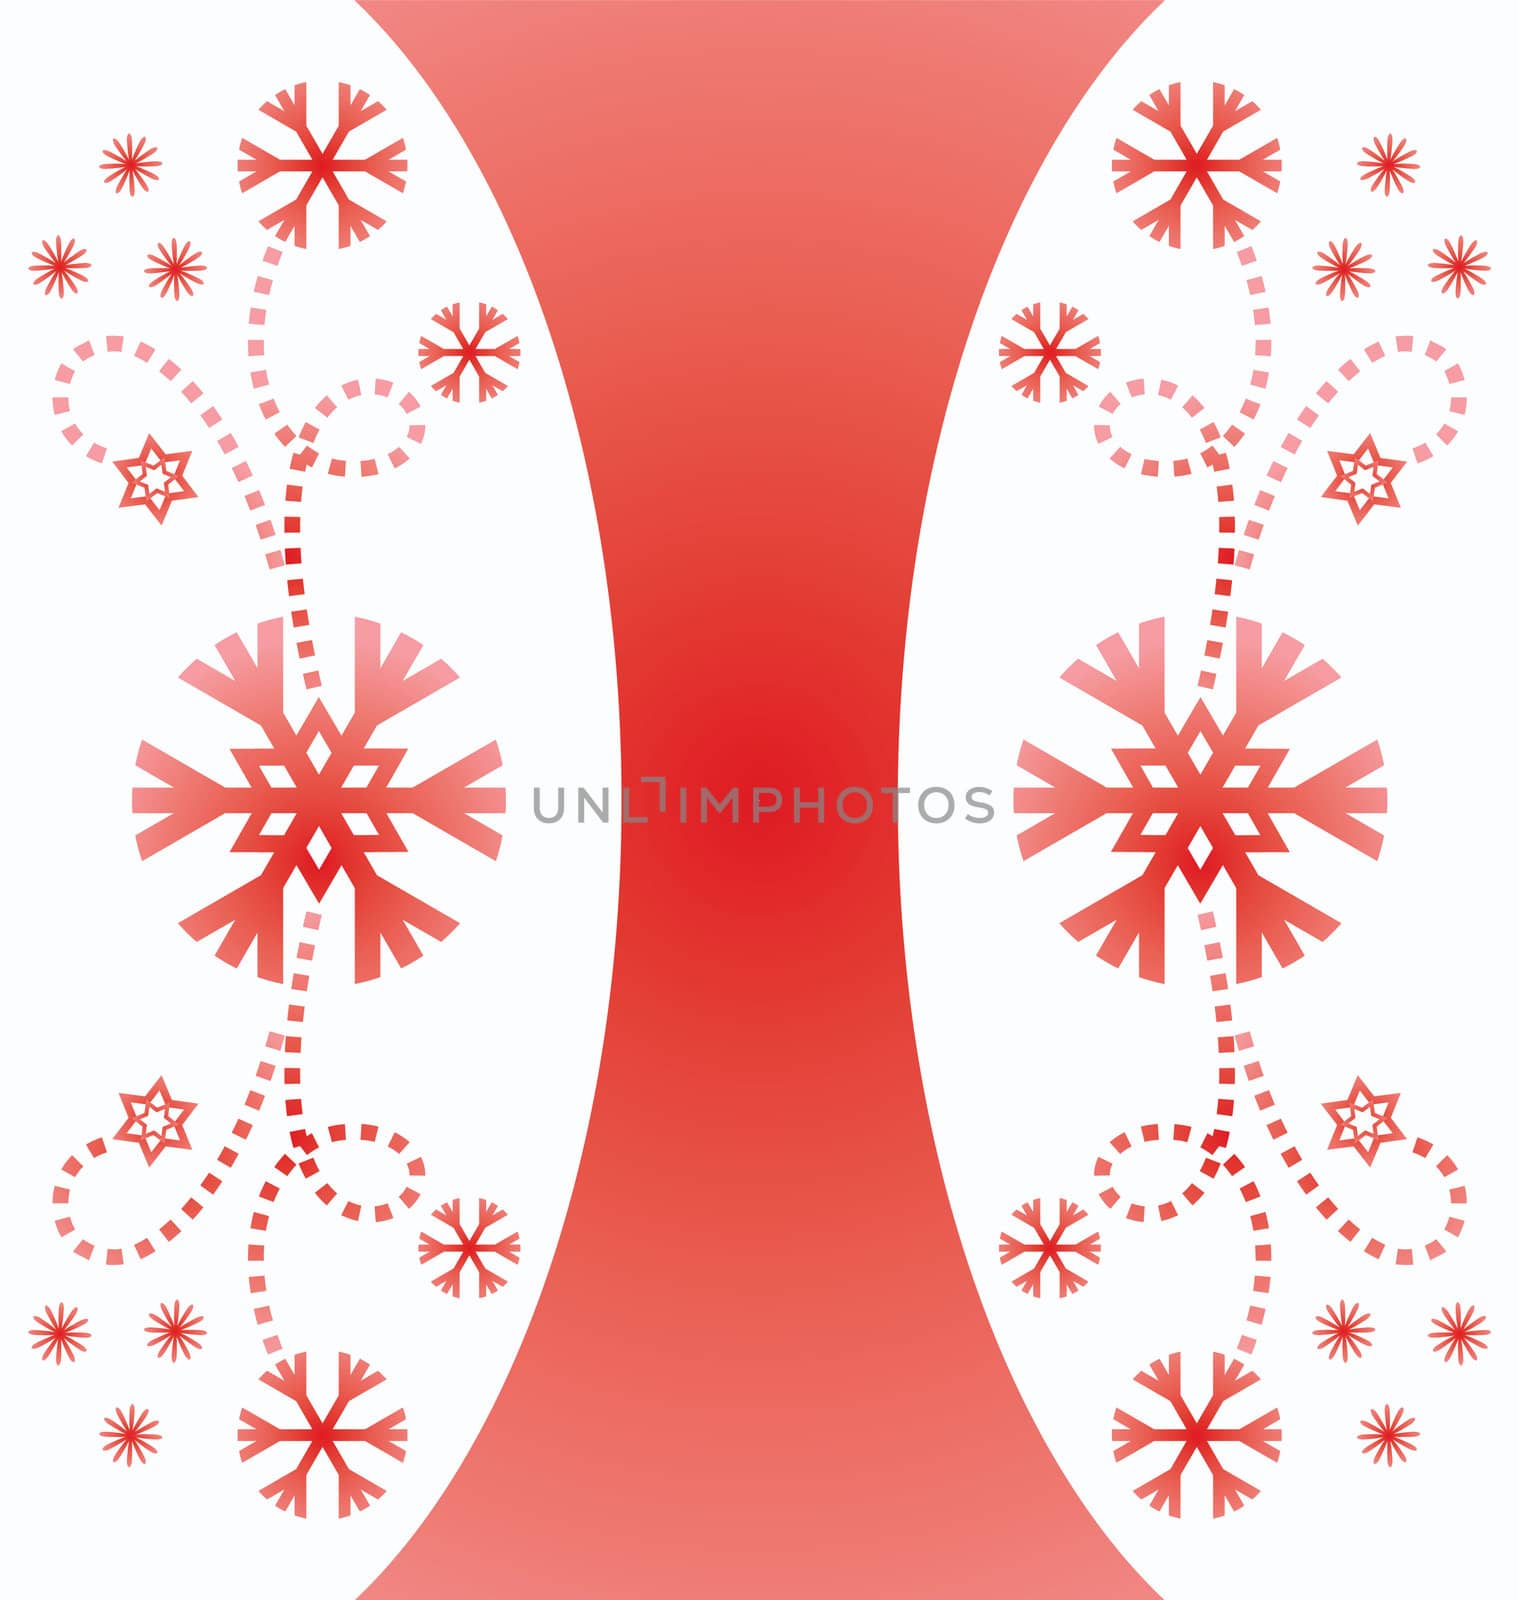 christmas vintage snowflake card illustration